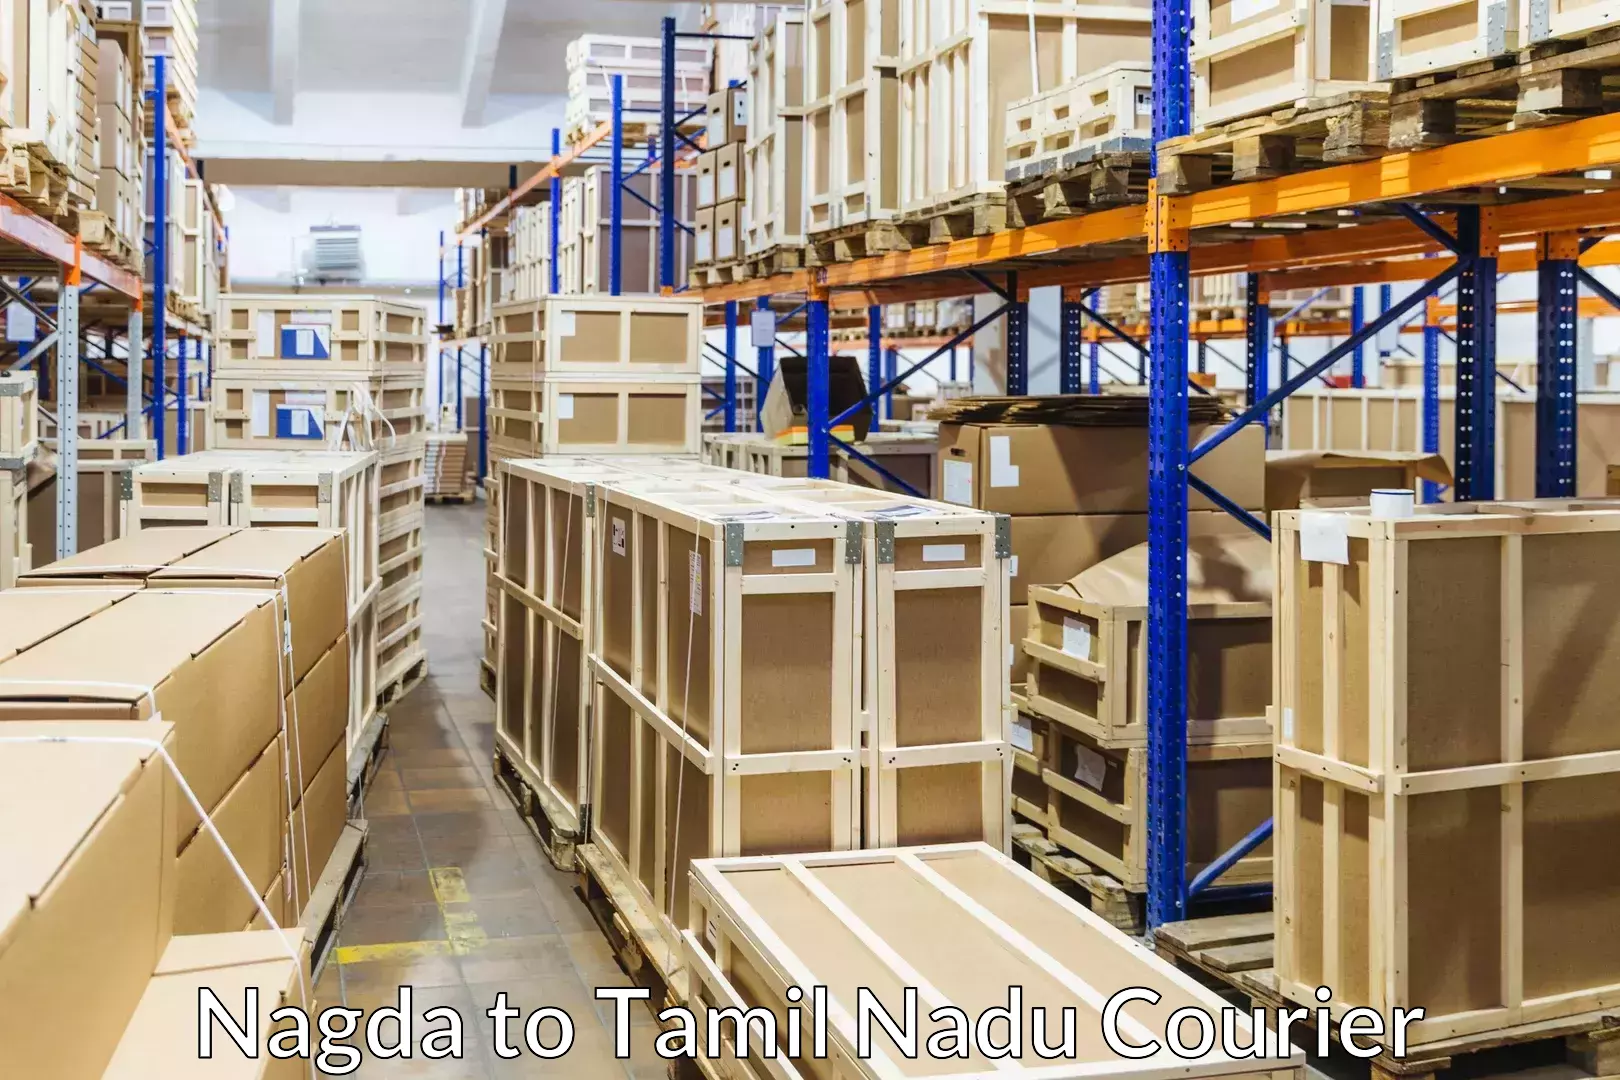 Seamless moving process in Nagda to Palayankottai